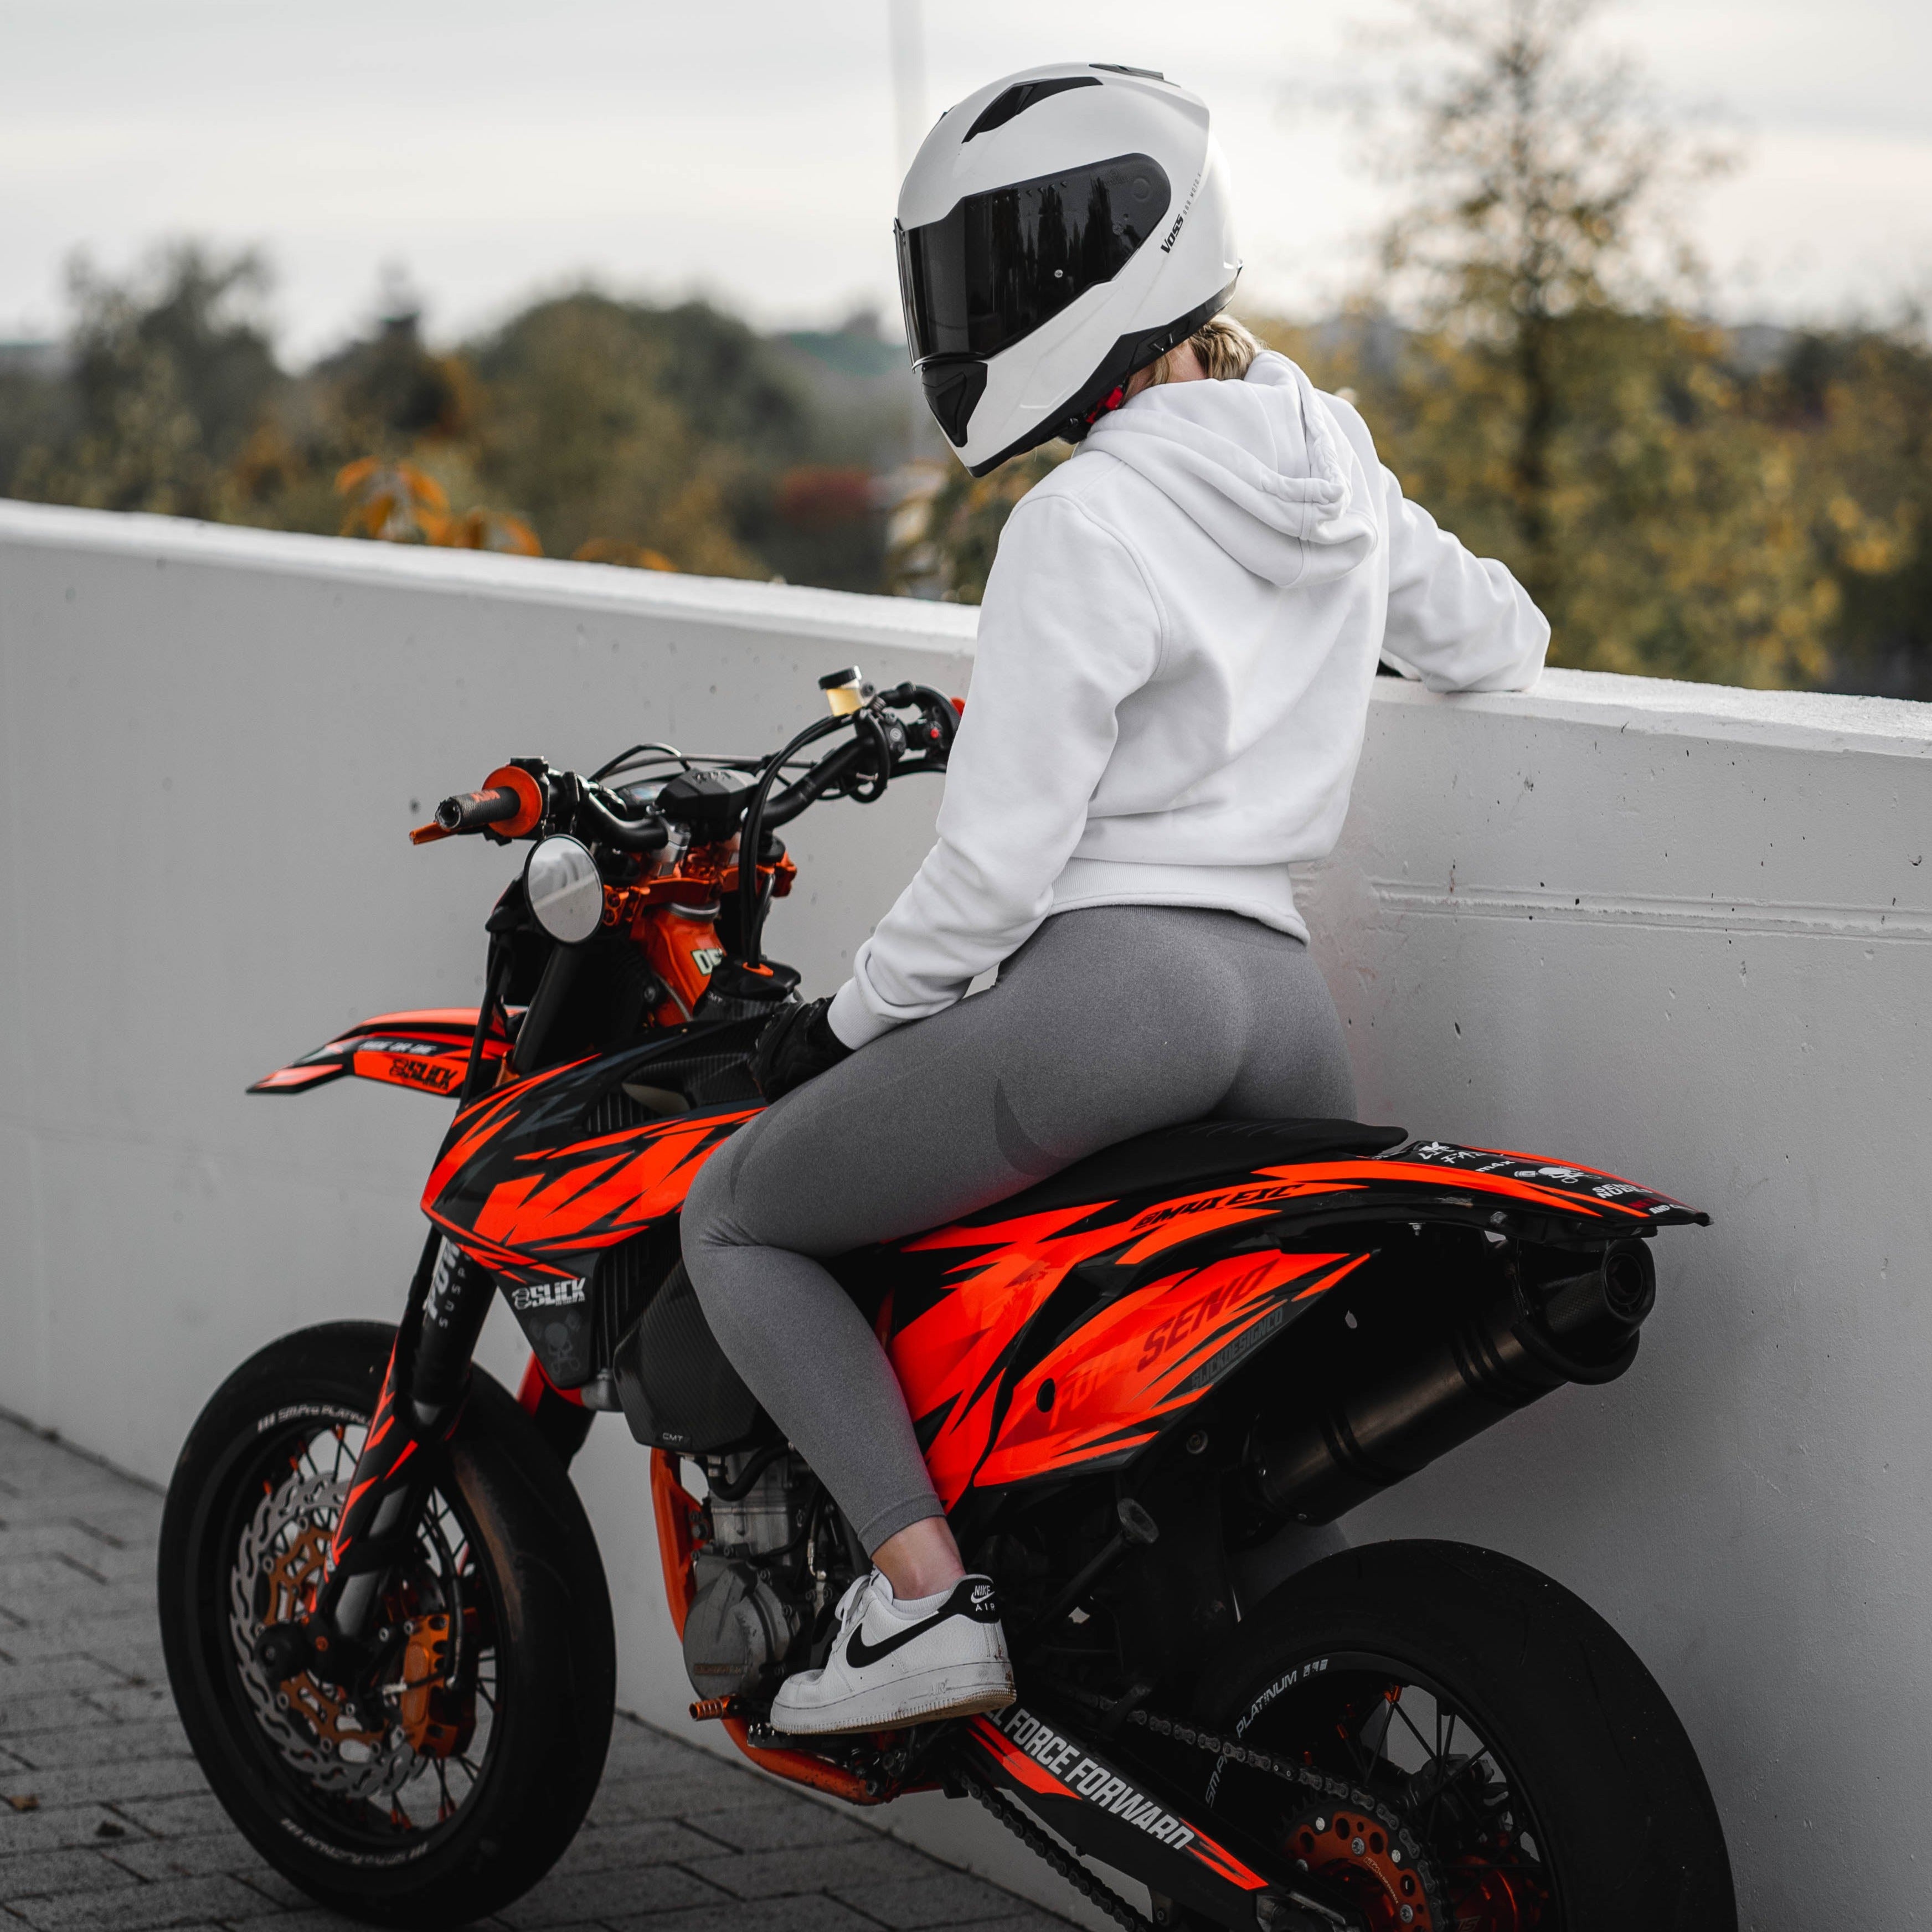 Voss 989 Moto-V Matte White Helmet